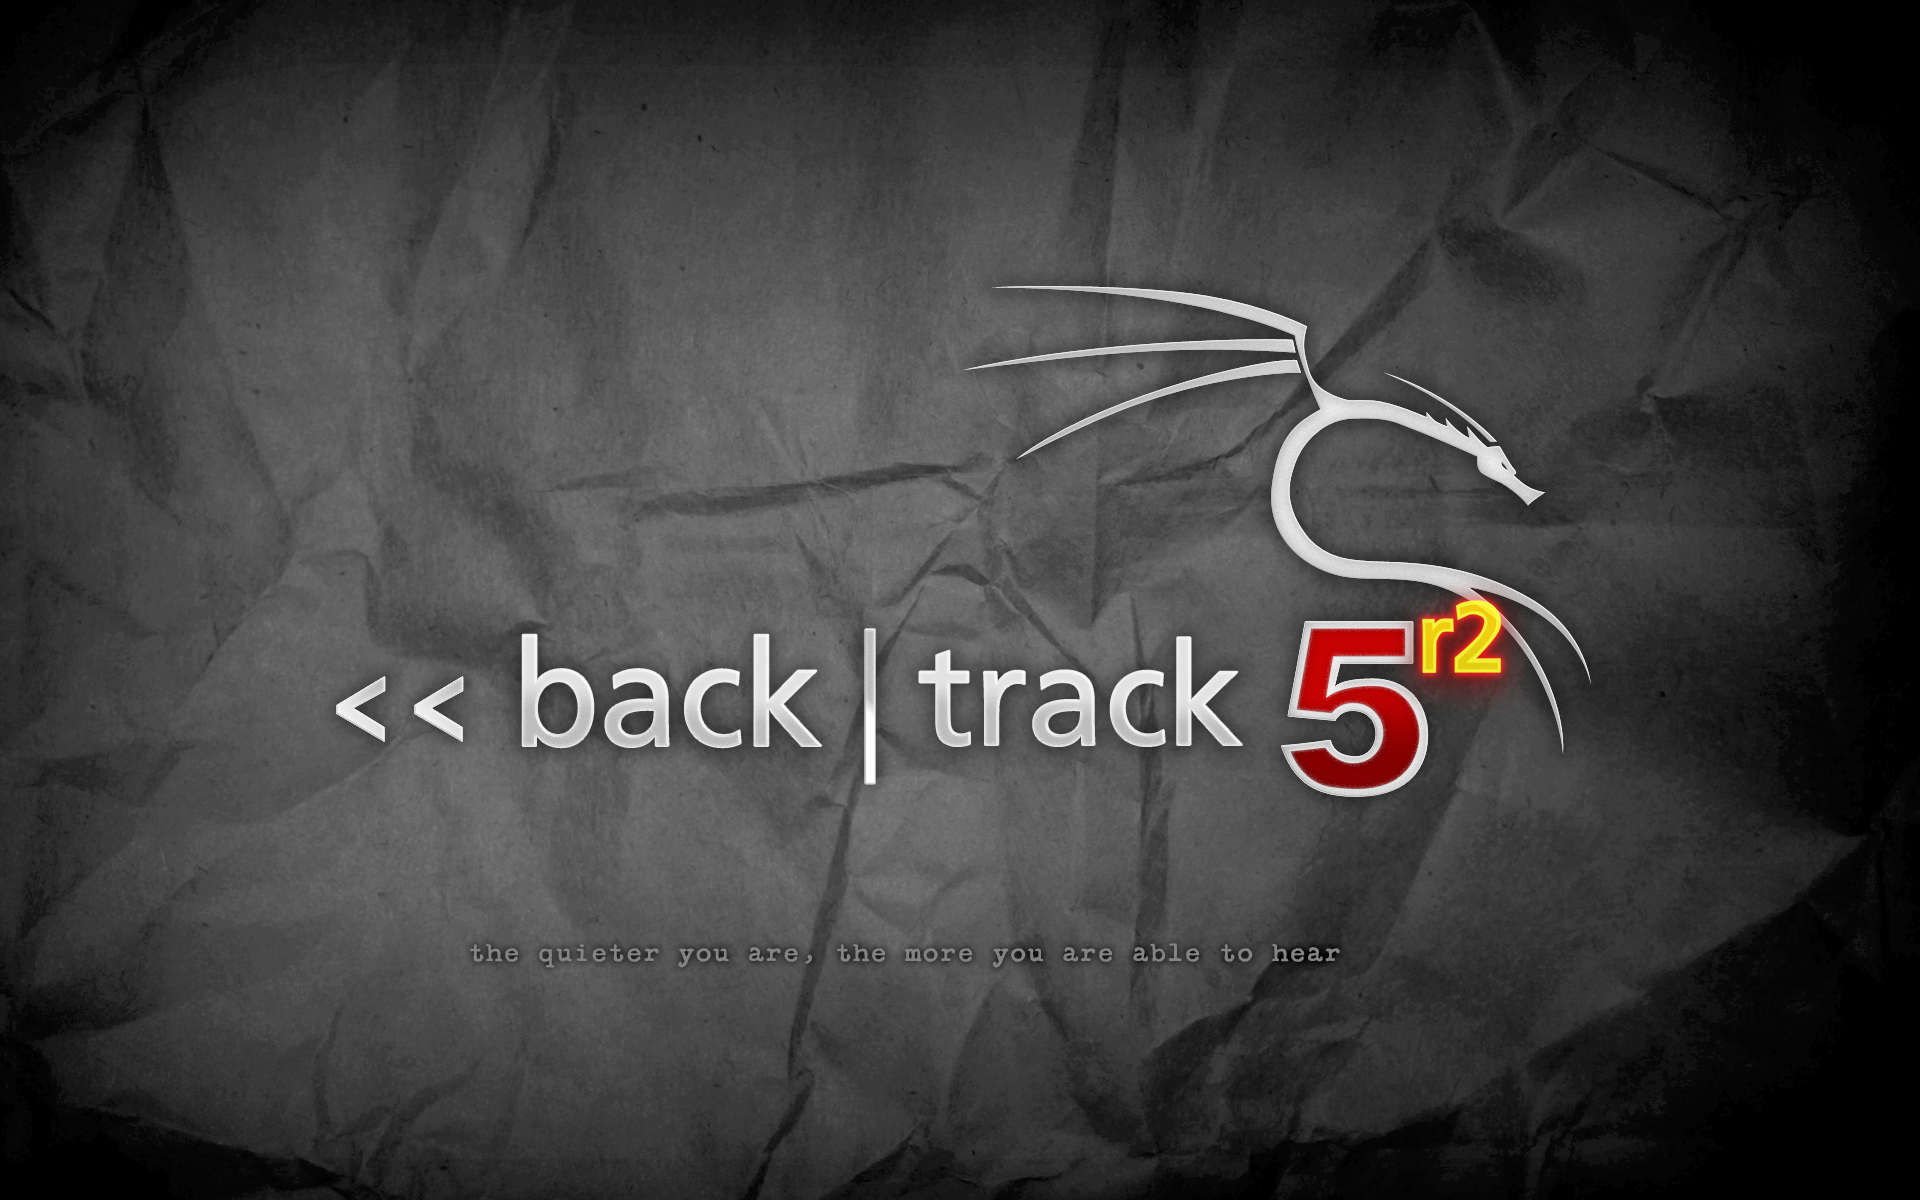 backtrack-5r2-grey2.png